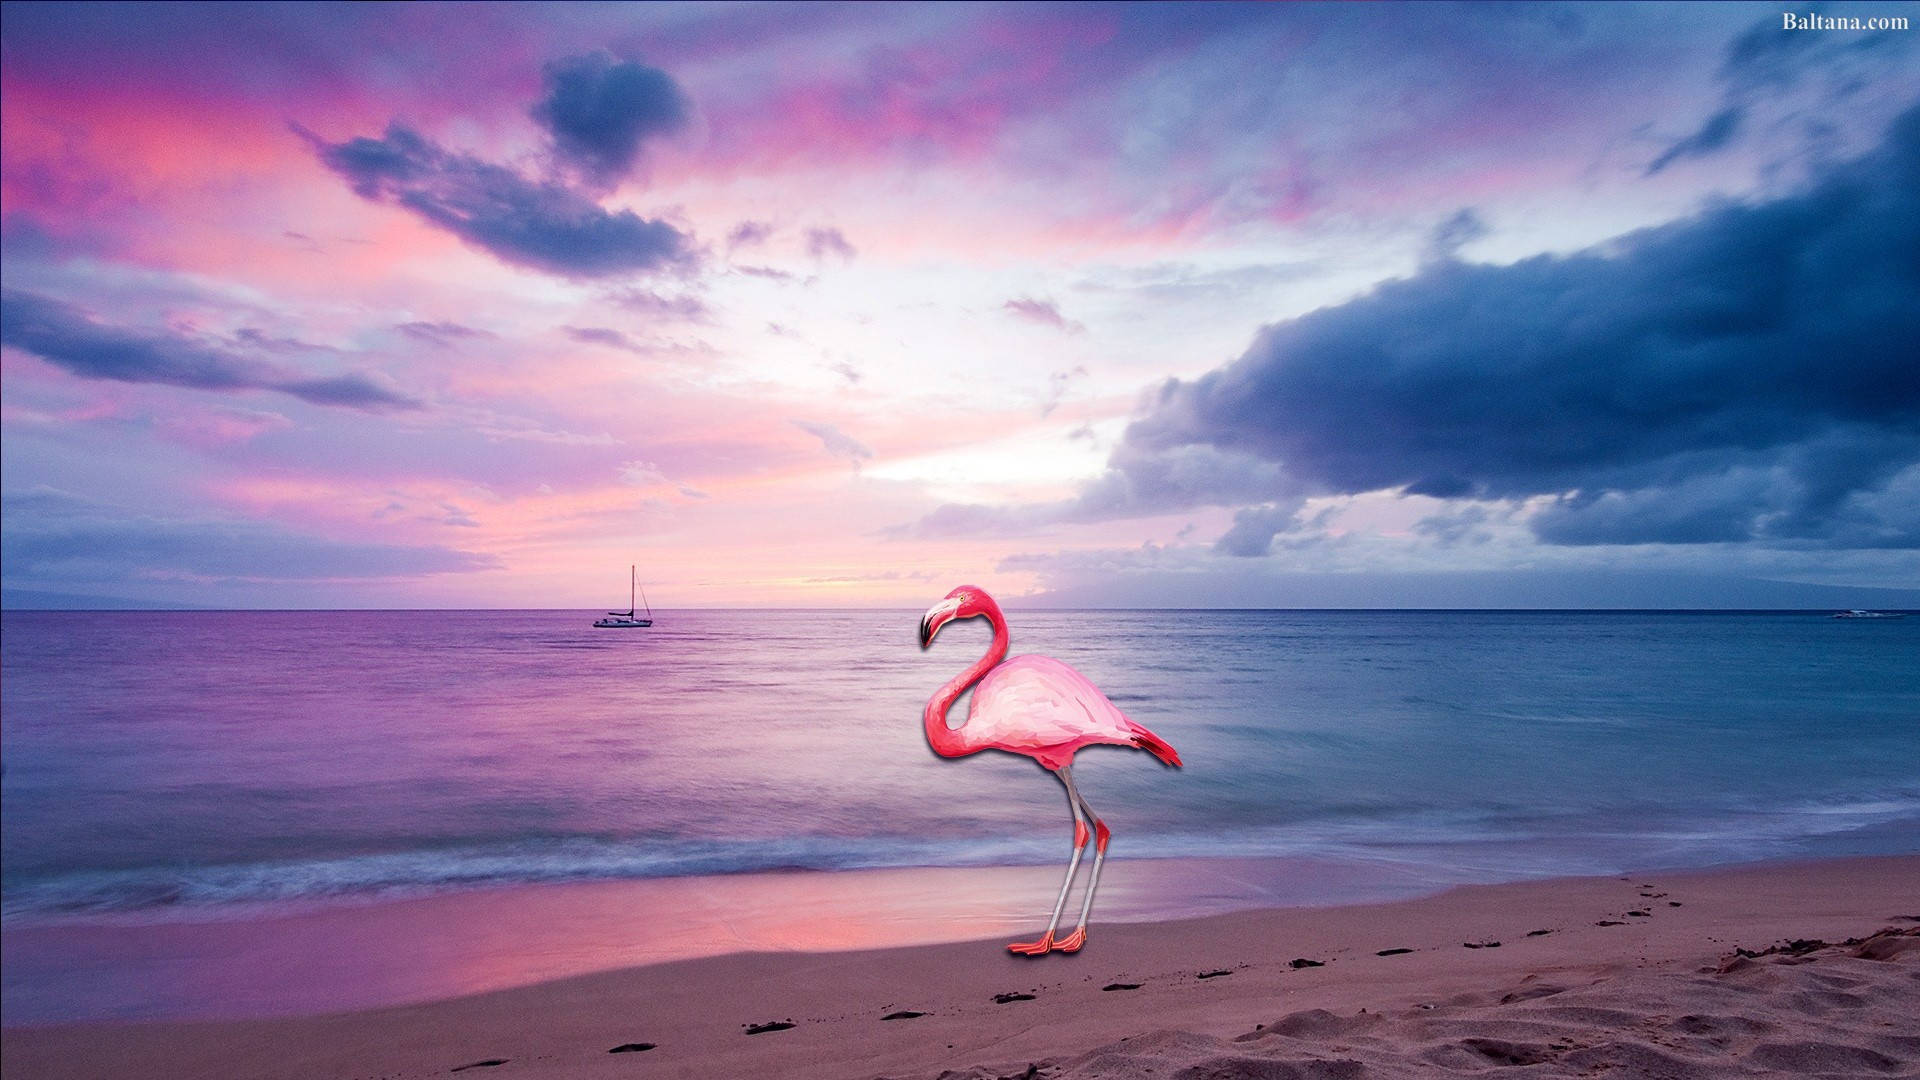  Flamingo Hintergrundbild 1920x1080. Free Flamingo Wallpaper Downloads, Flamingo Wallpaper for FREE